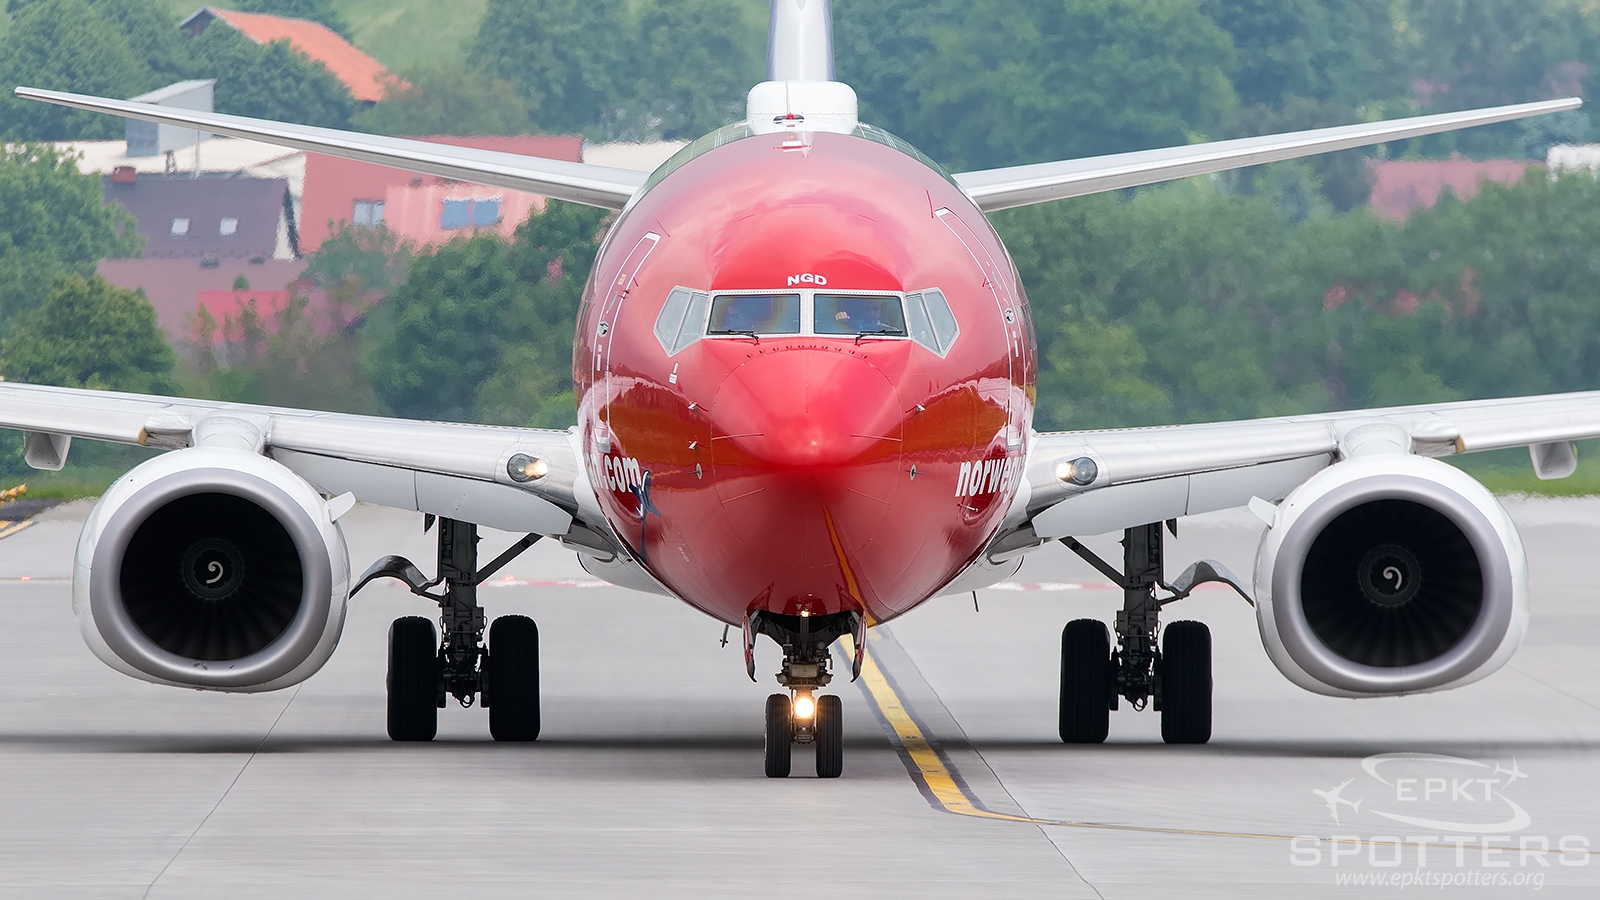 LN-NGD - Boeing 737 -8JP (Norwegian Air Shuttle) / Balice - Krakow Poland [EPKK/KRK]